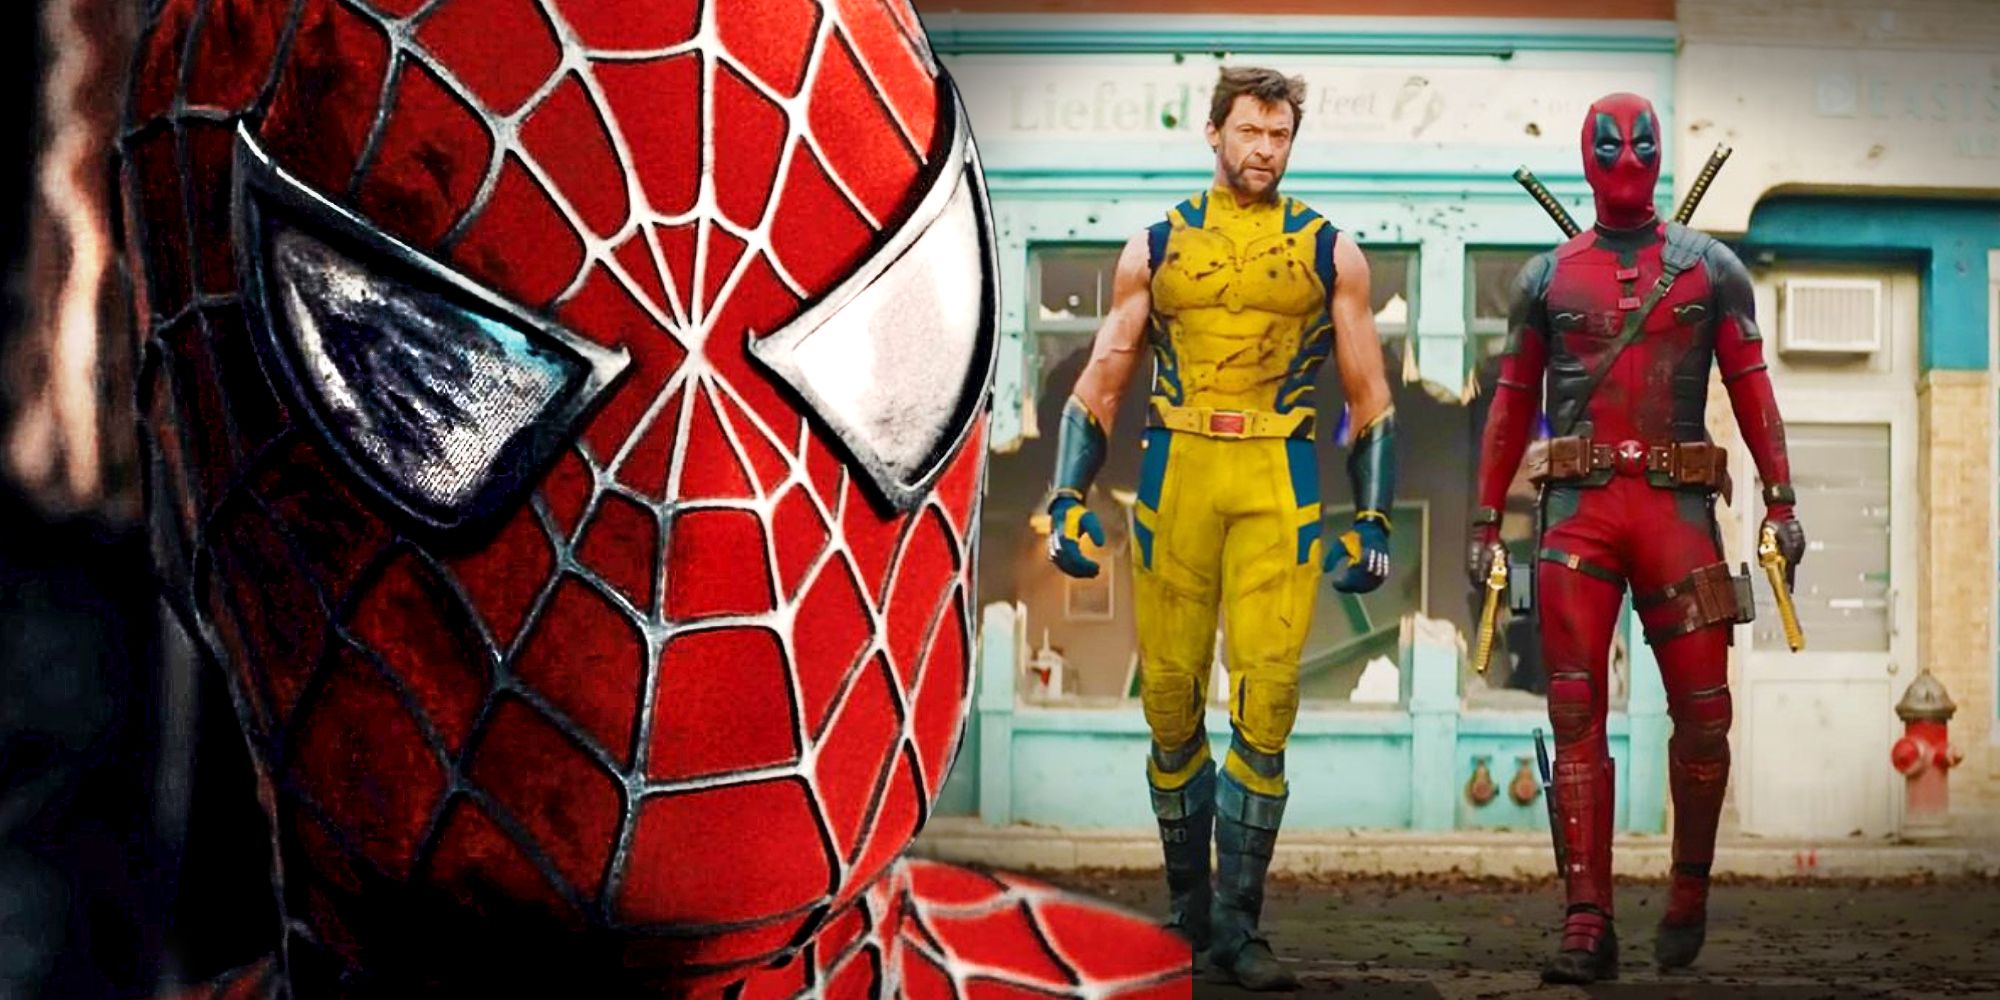 Los fanáticos de Marvel detectan la conexión de Spider-Man con Deadpool y Wolverine, pero todavía no estoy convencido